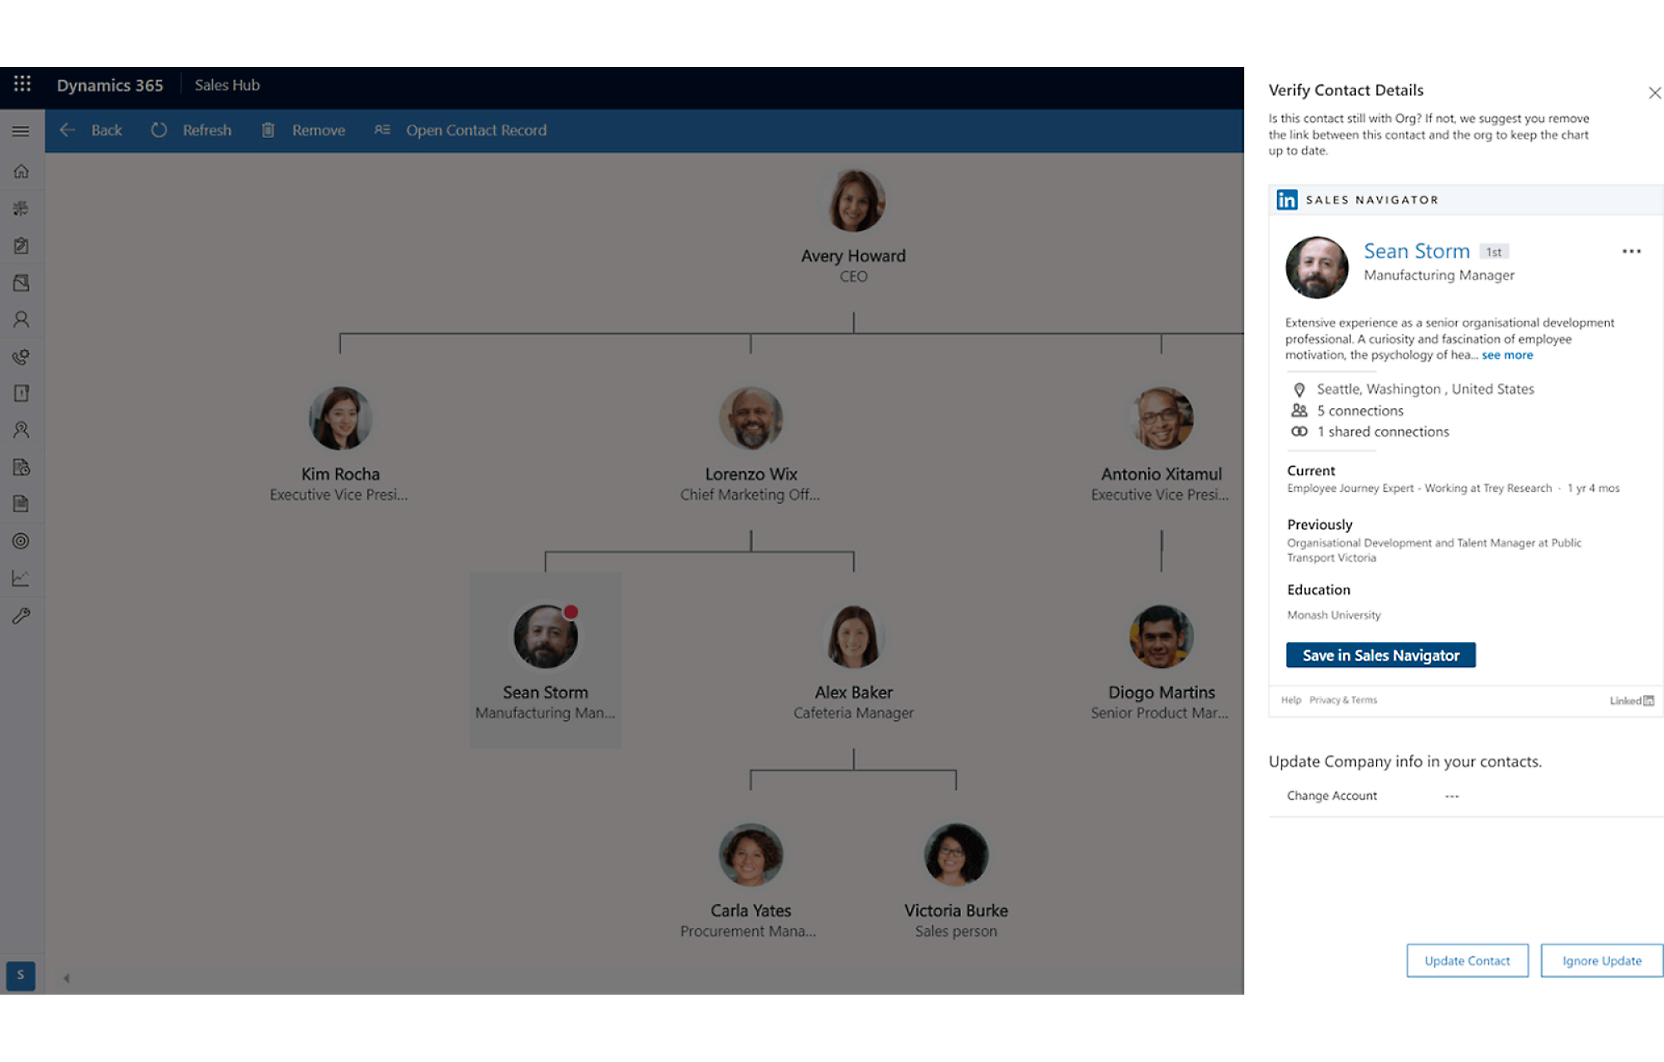 Captura de pantalla de una interfaz de Dynamics 365 que muestra un organigrama y un perfil detallado de un empleado llamado Sean Storm